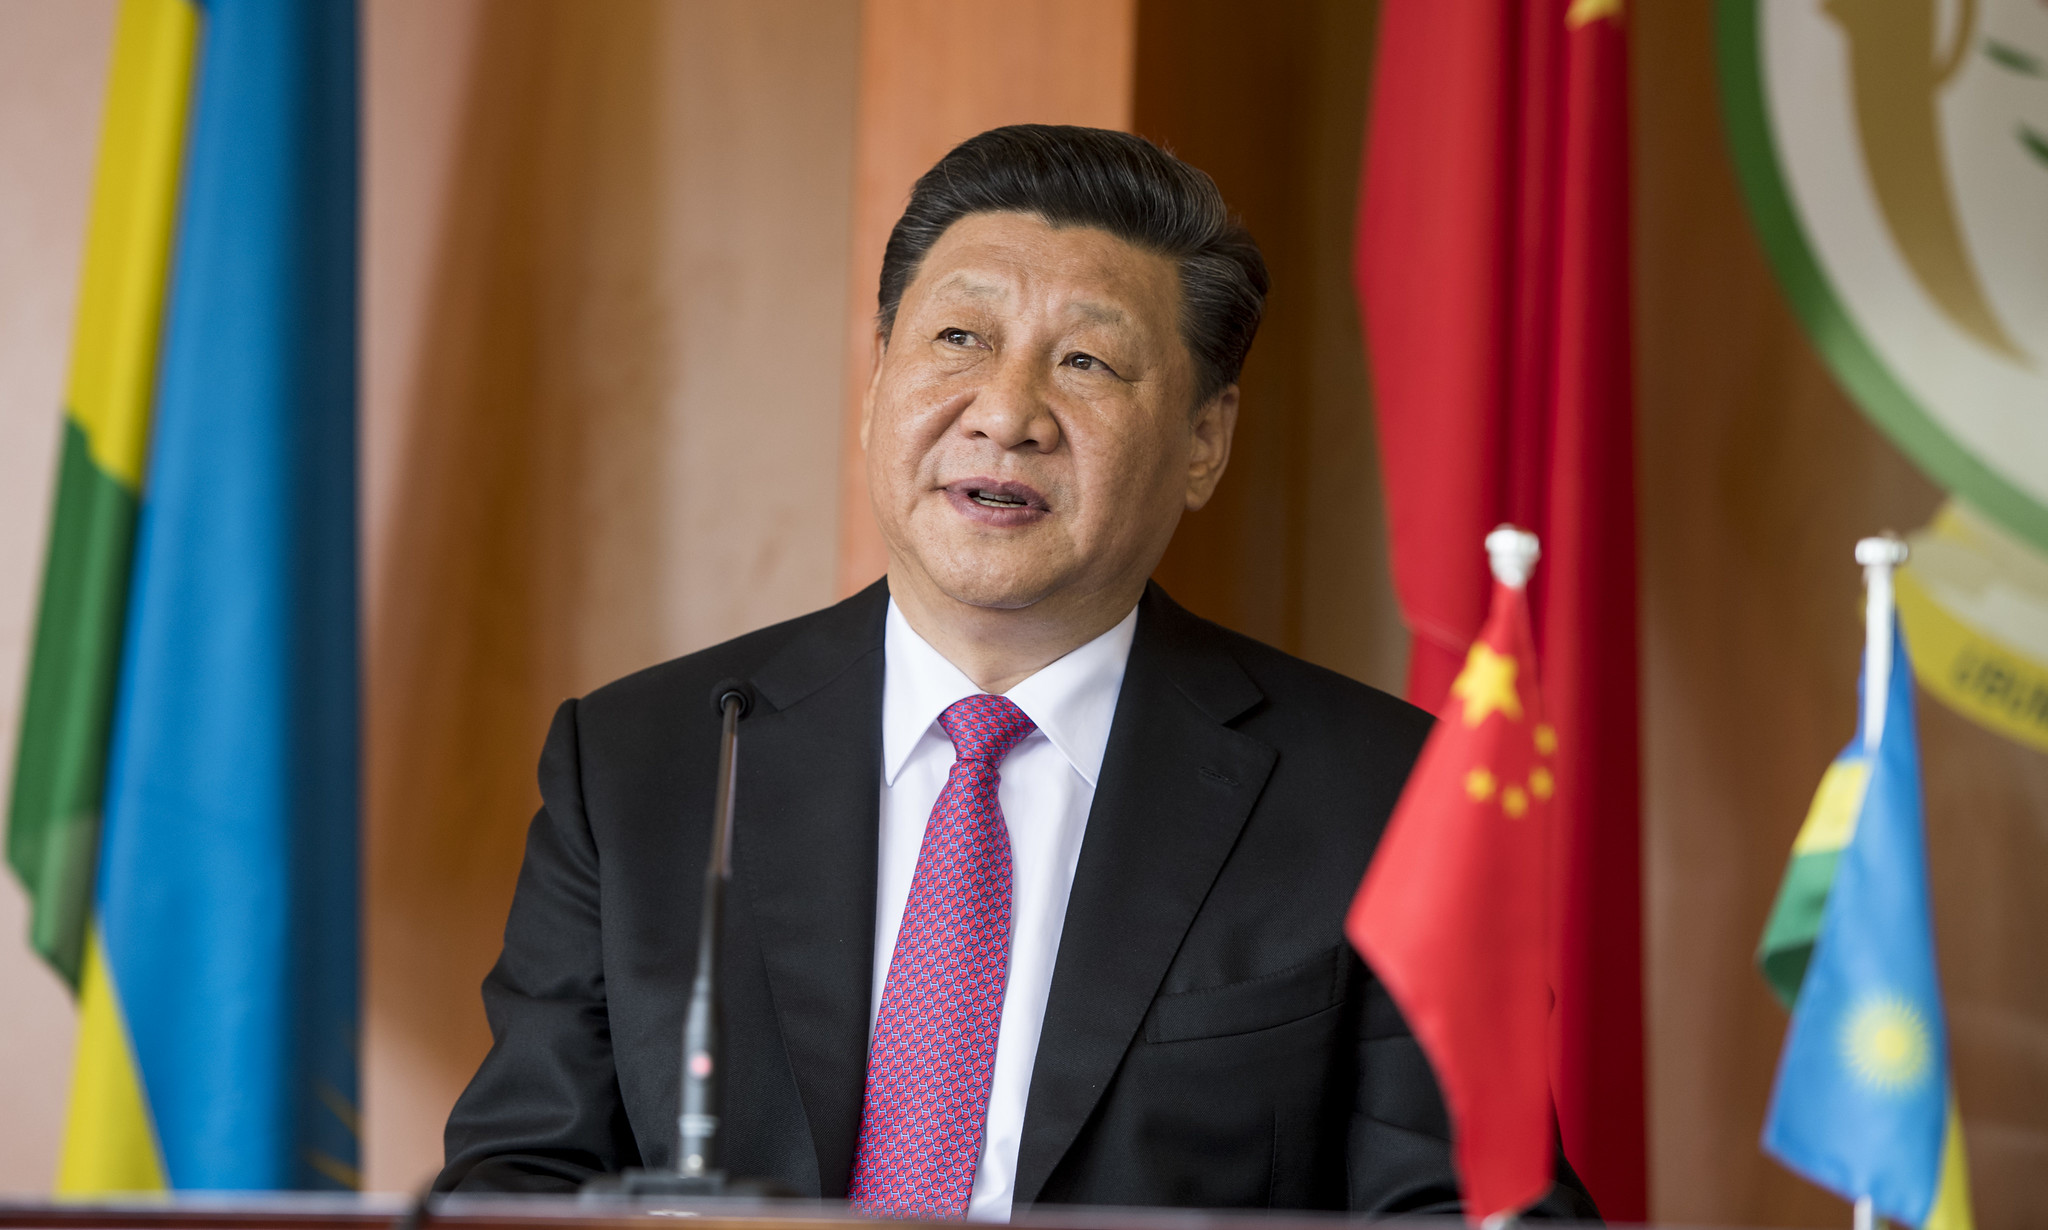 سنگر چین؛ طرح شی جین پینگ برای استقلال اقتصادی / تکنوکرات ها جایگزین بروکرات ها می شوند